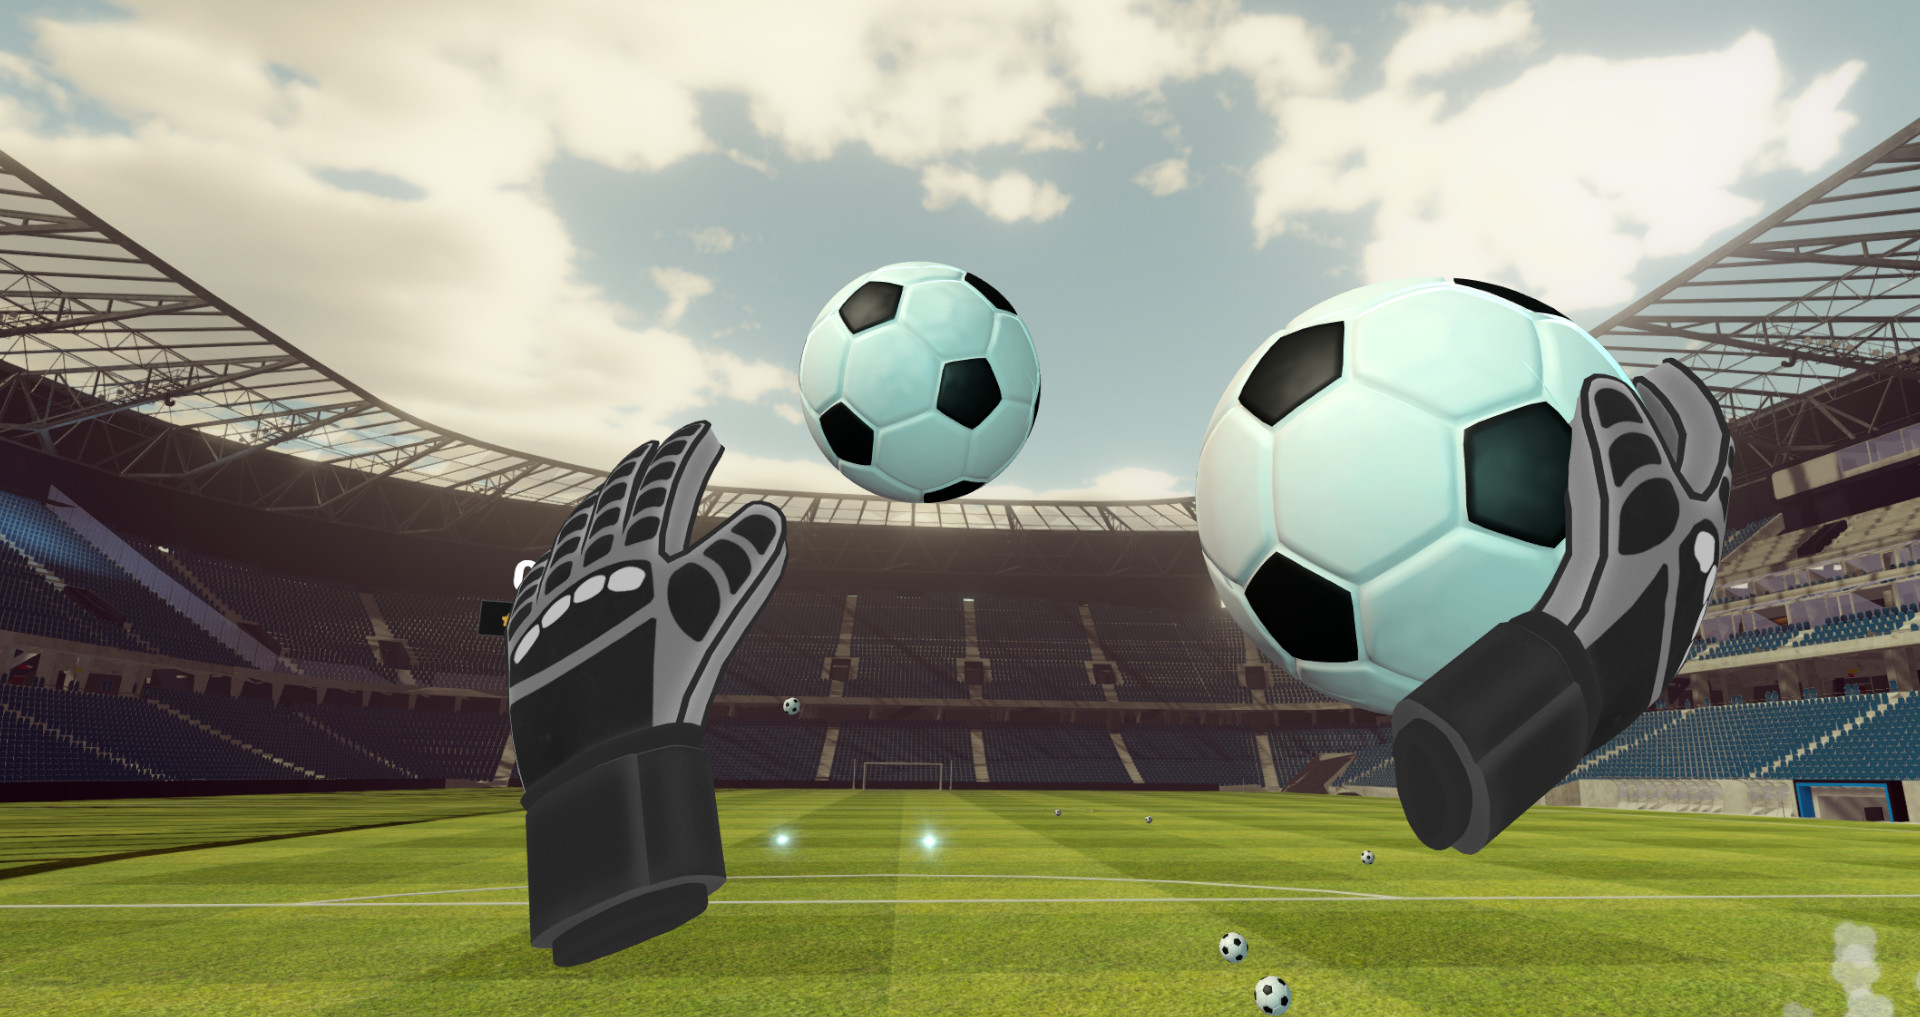 Goalkeeper VR Challenge Free Download